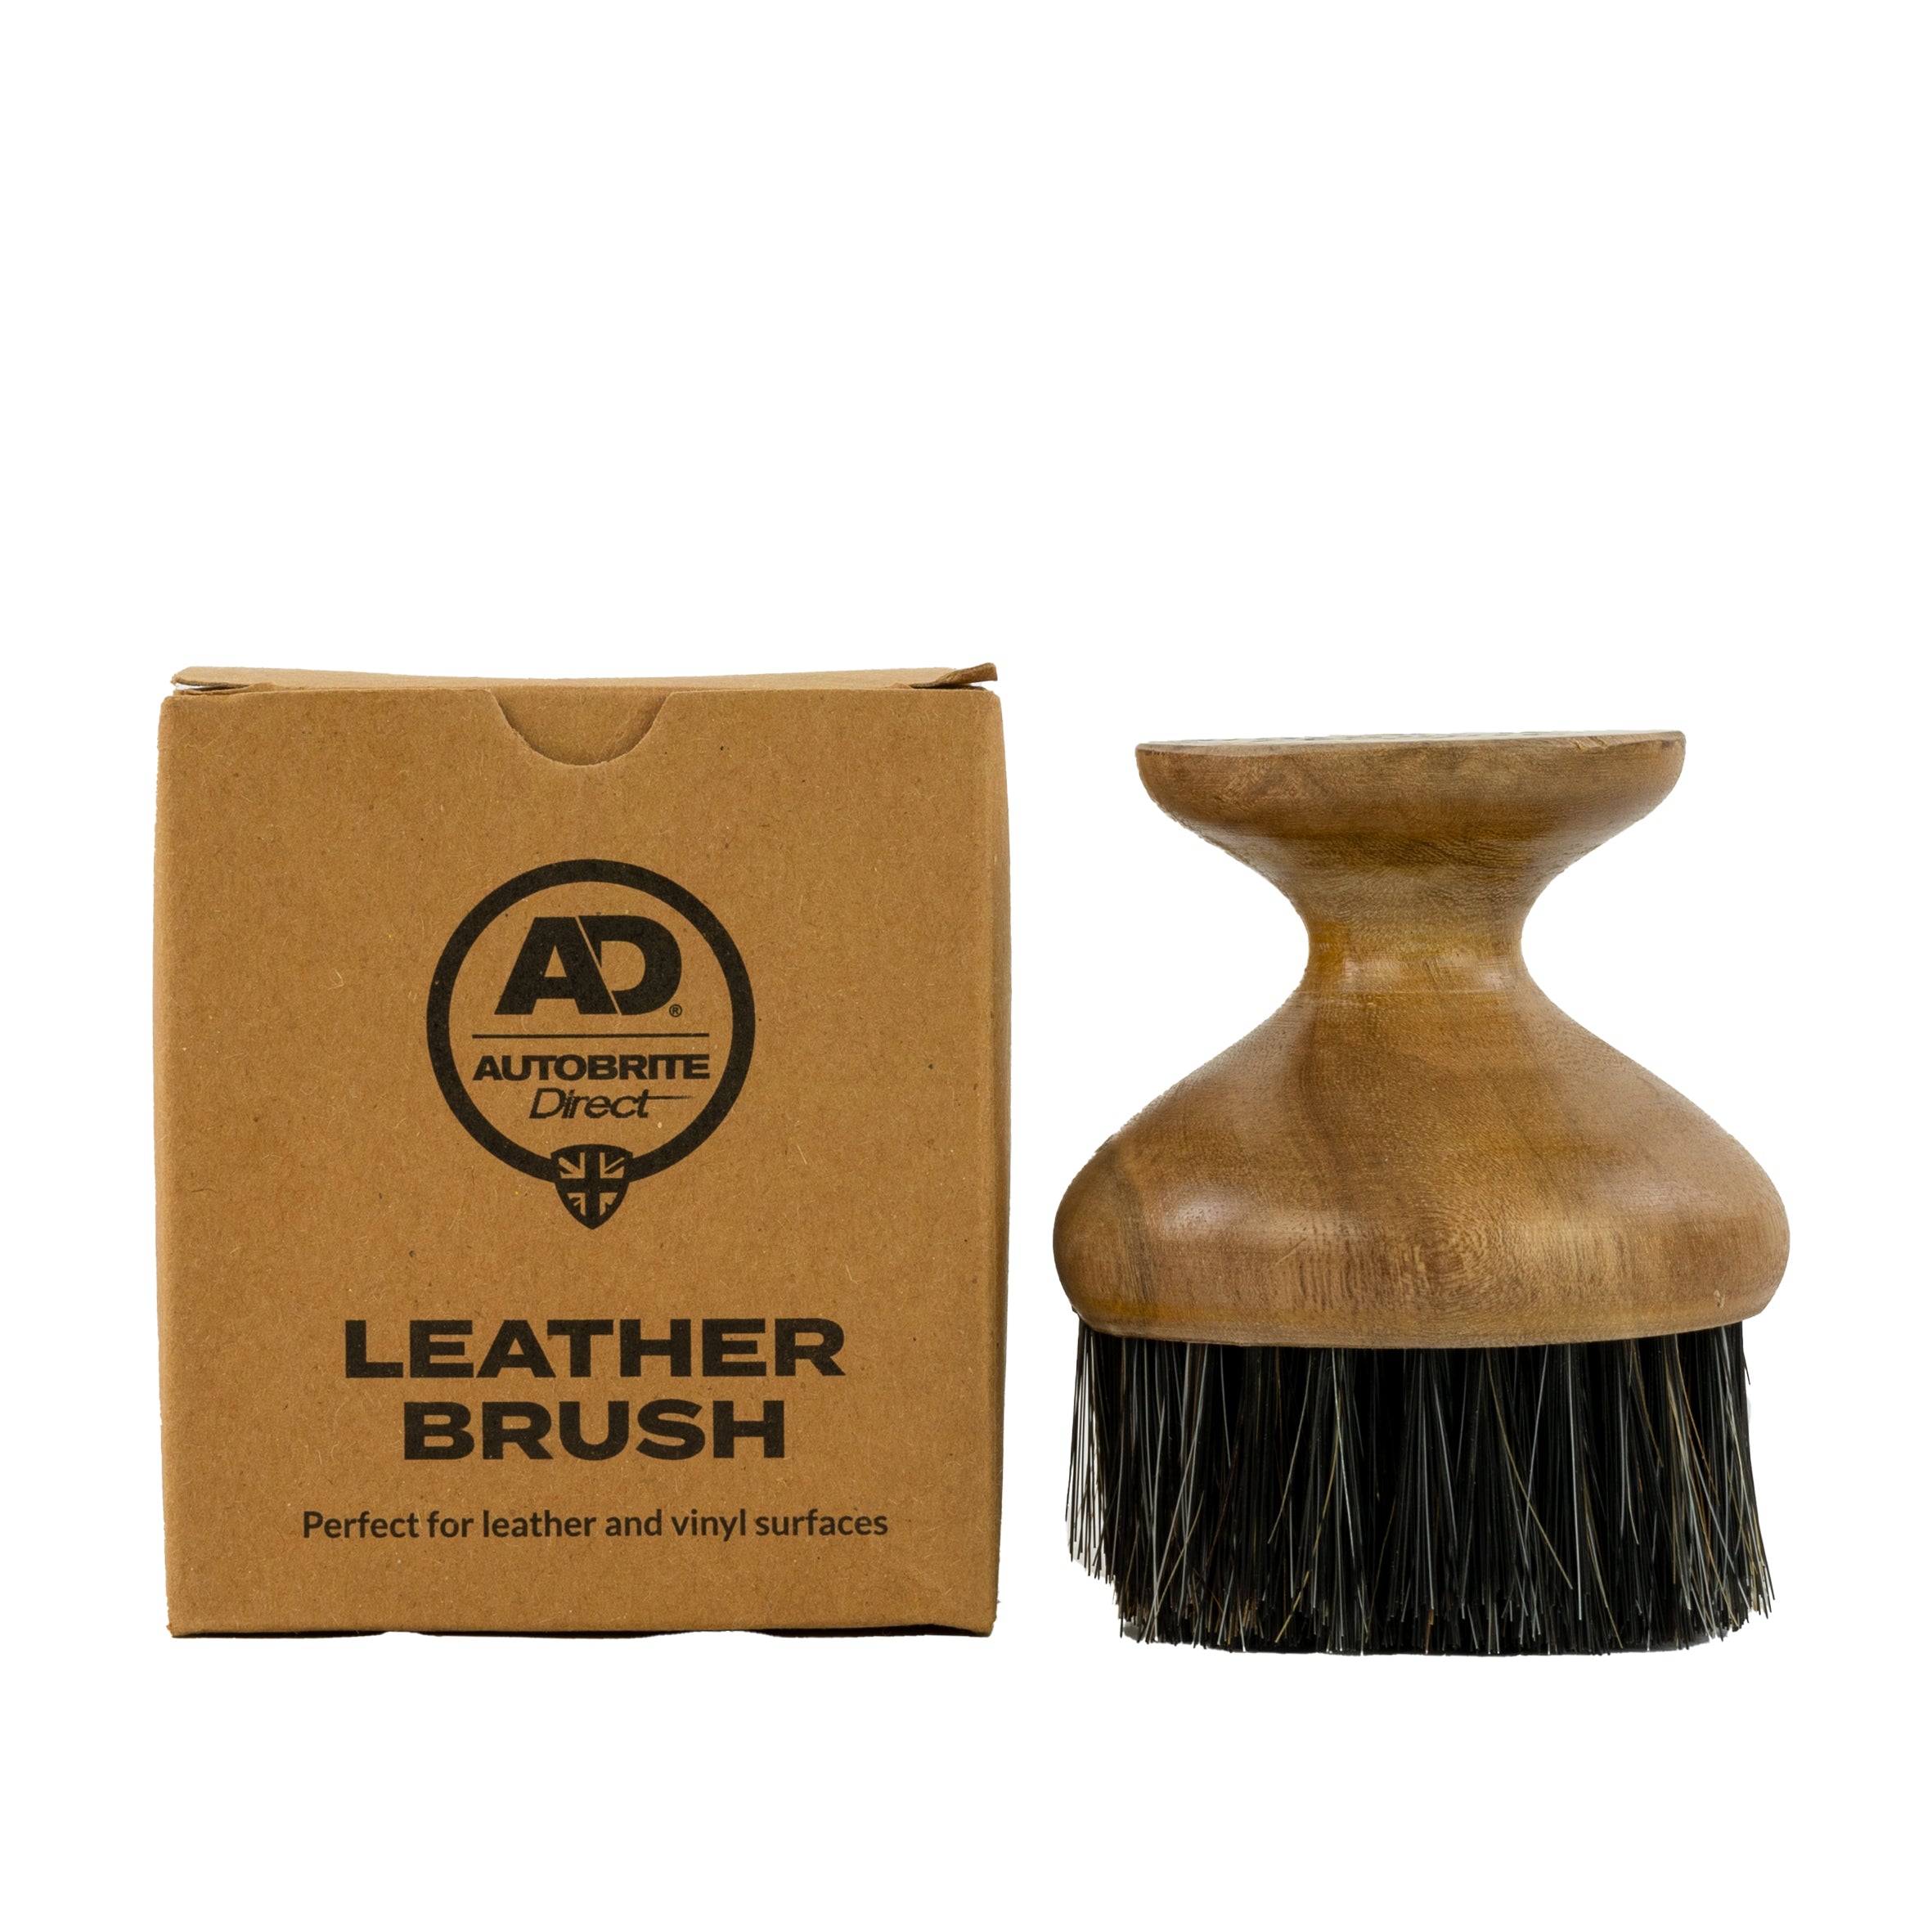 Autobrite Direct Leather Brush